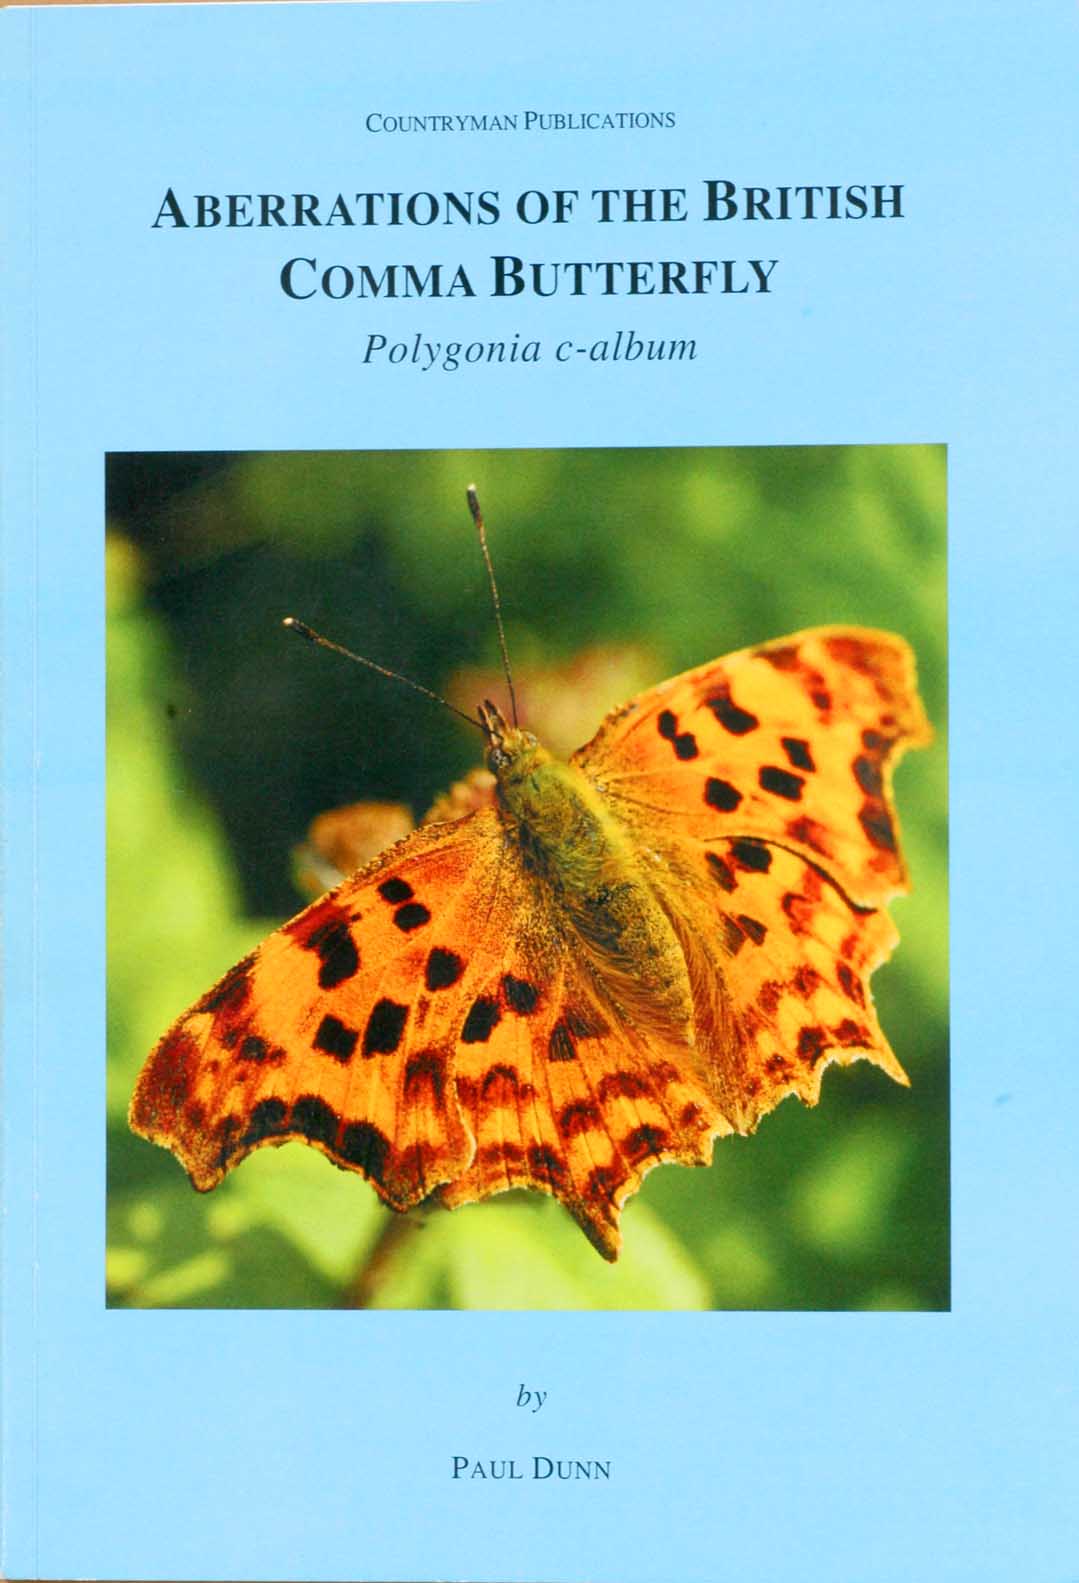 Book cover - Comma